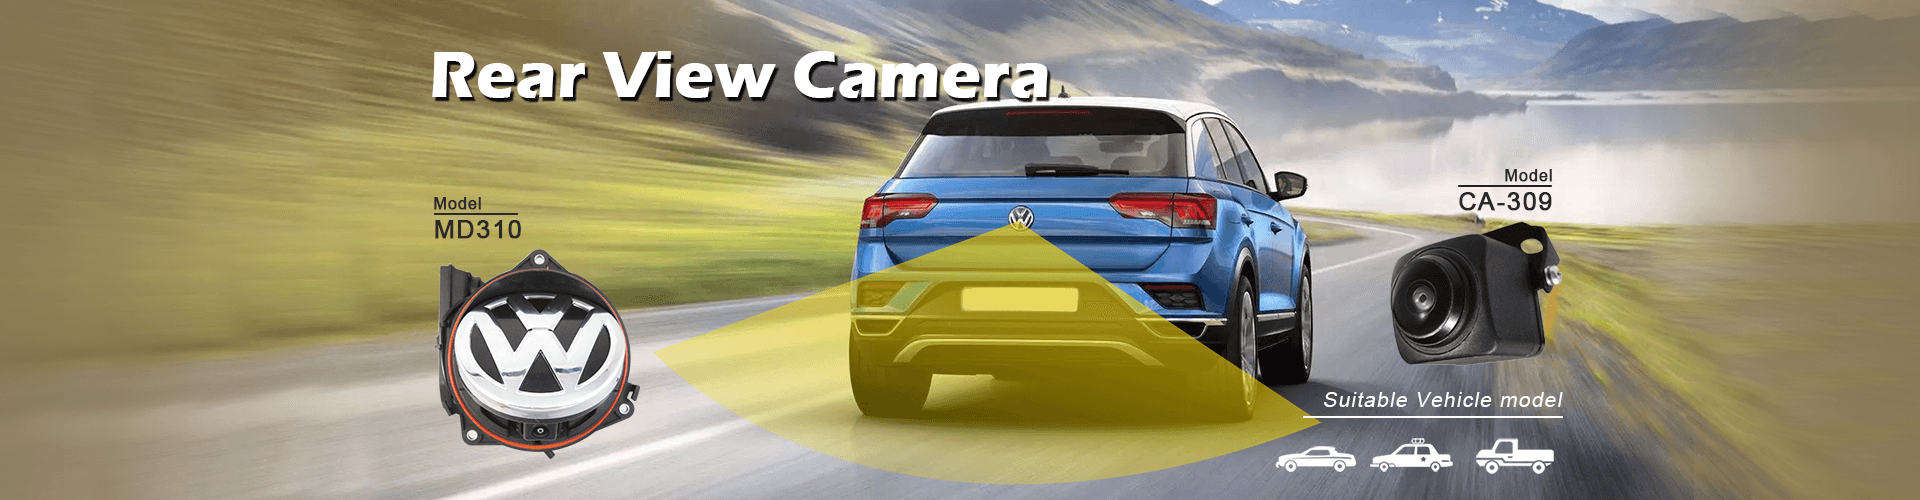 Câmeras traseiras de alta qualidade para veículos de passageiros